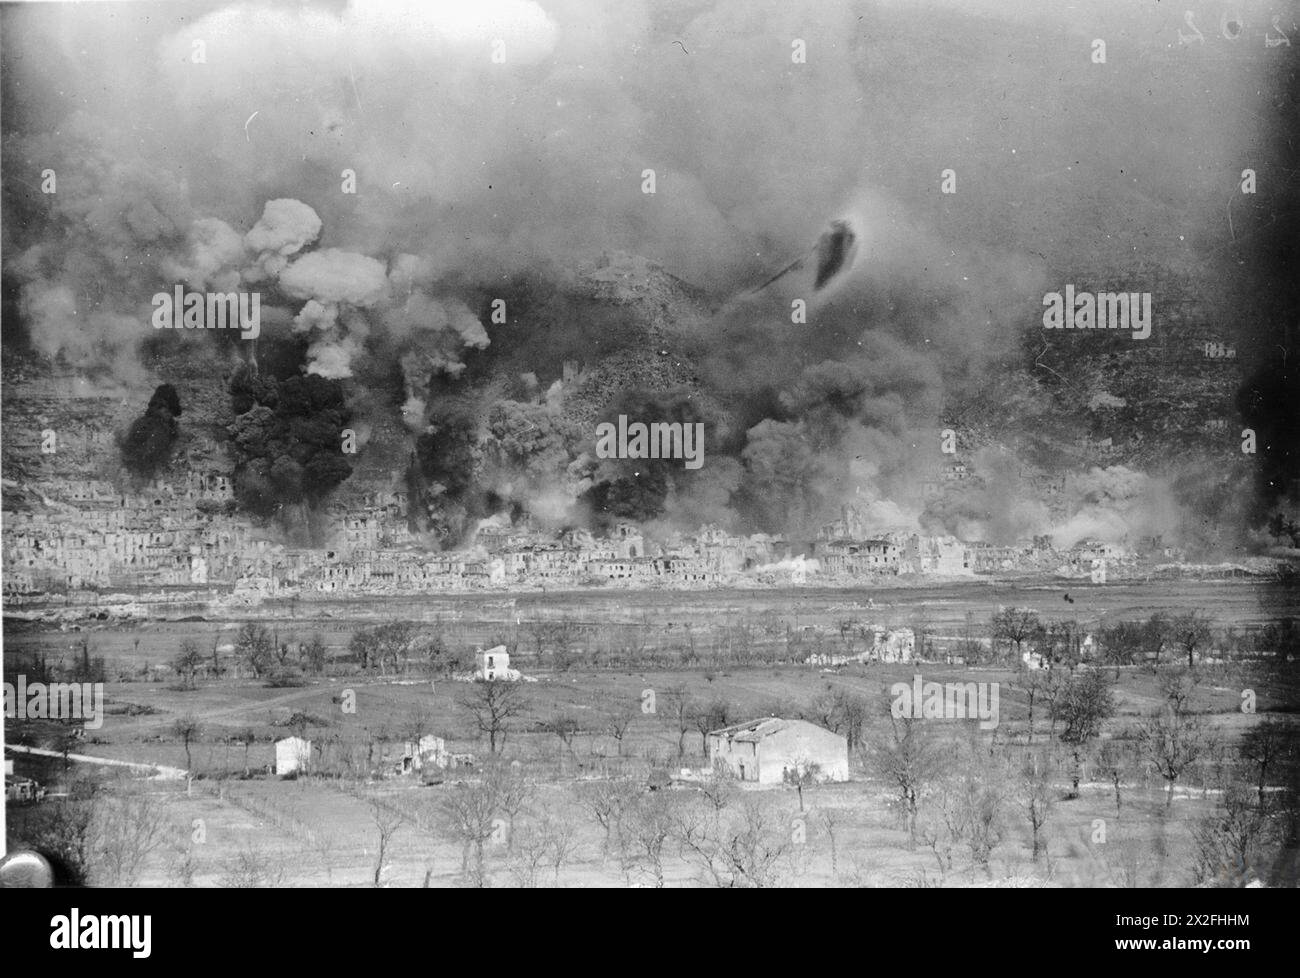 LES BATAILLES DE MONTE CASSINO, JANVIER-MAI 1944 - deuxième phase 15 février - 10 mai 1944 : la ville de Cassino enveloppée de fumée noire lors du barrage allié le 15 mars 1944. Plus de 1 250 tonnes de bombes ont été larguées à cette occasion Banque D'Images